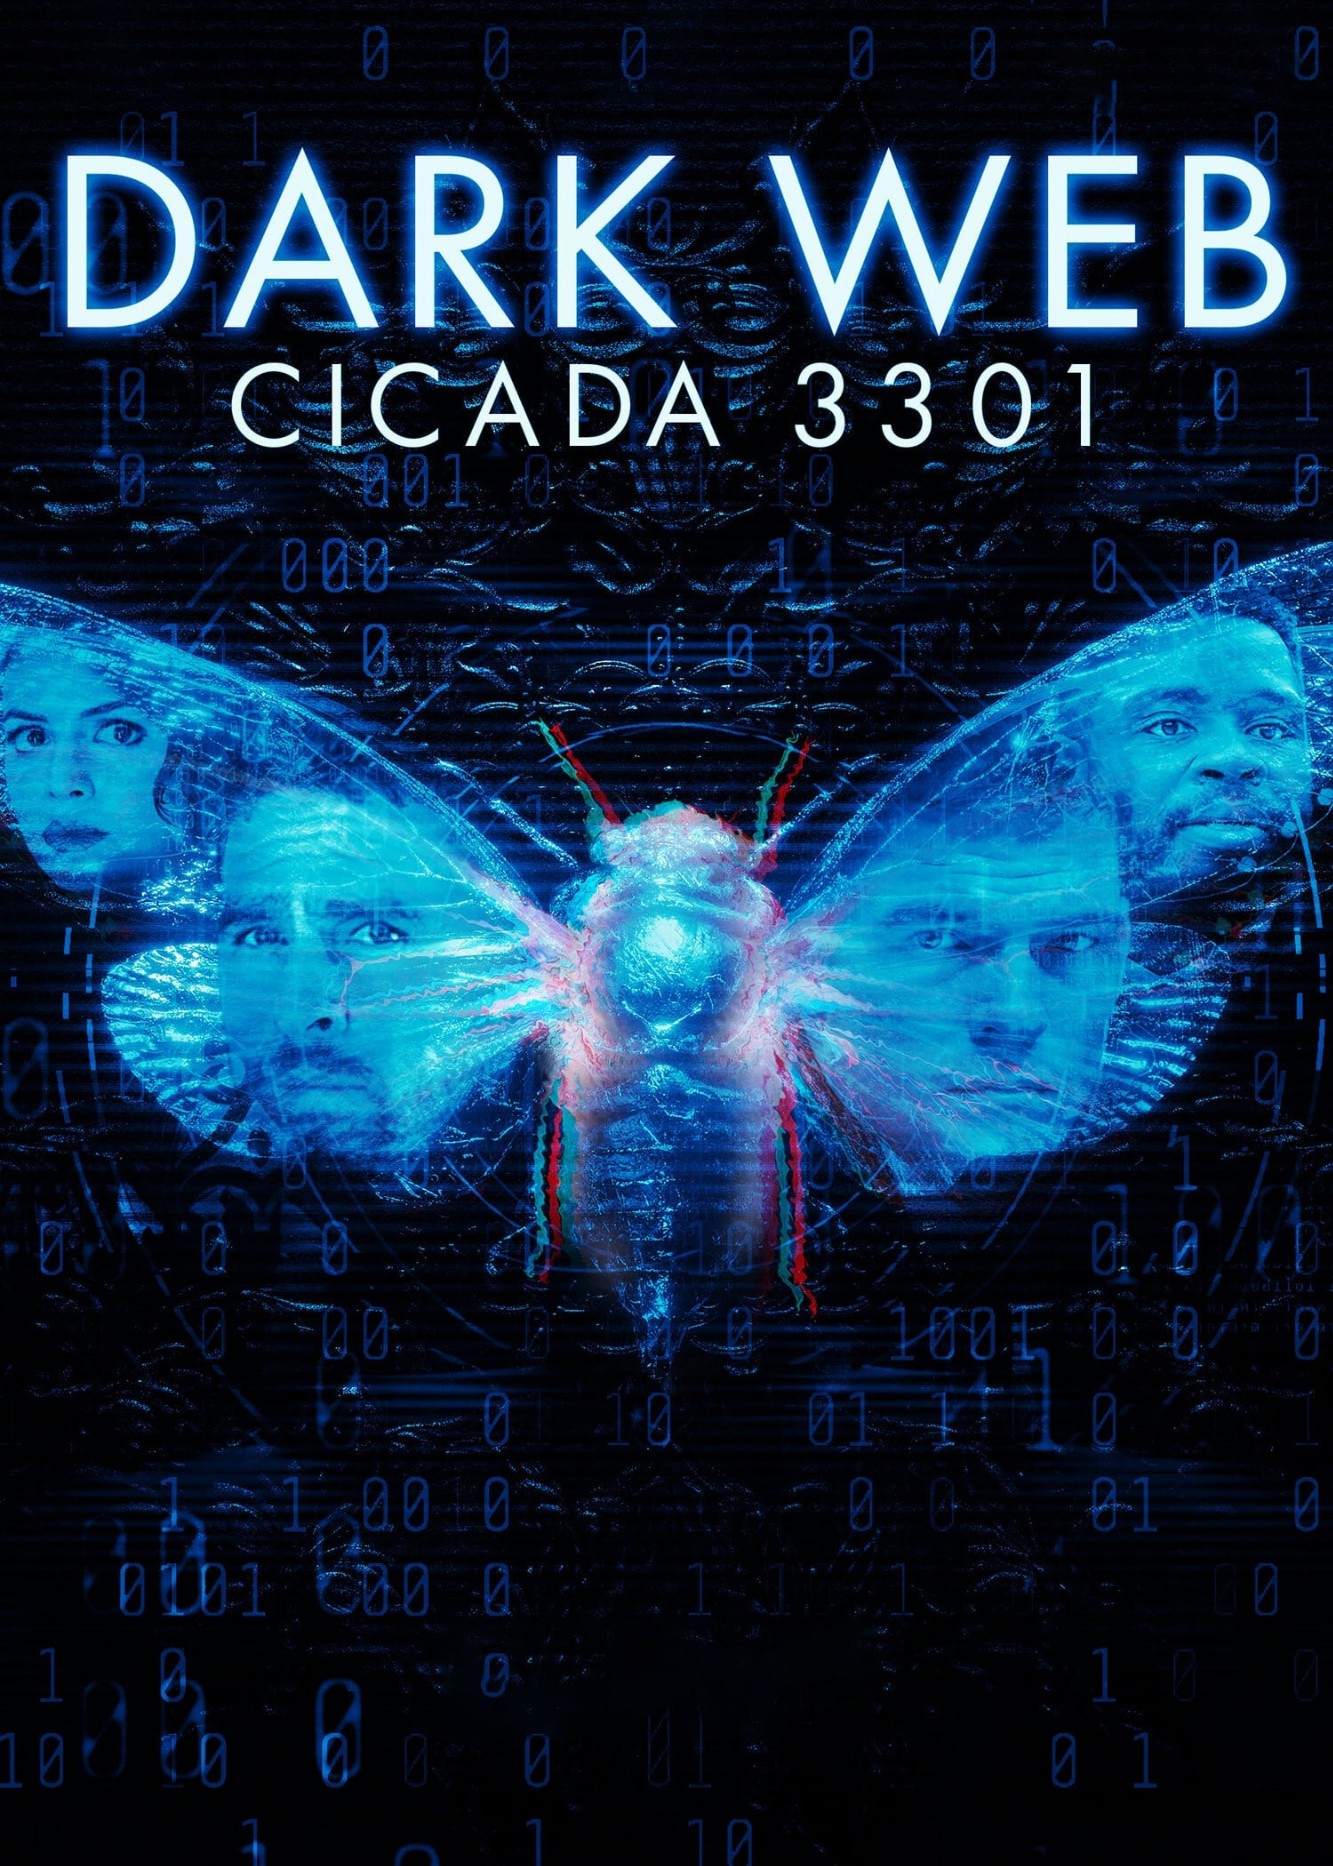 Dark Web: Cicada 3301 - Dark Web: Cicada 3301